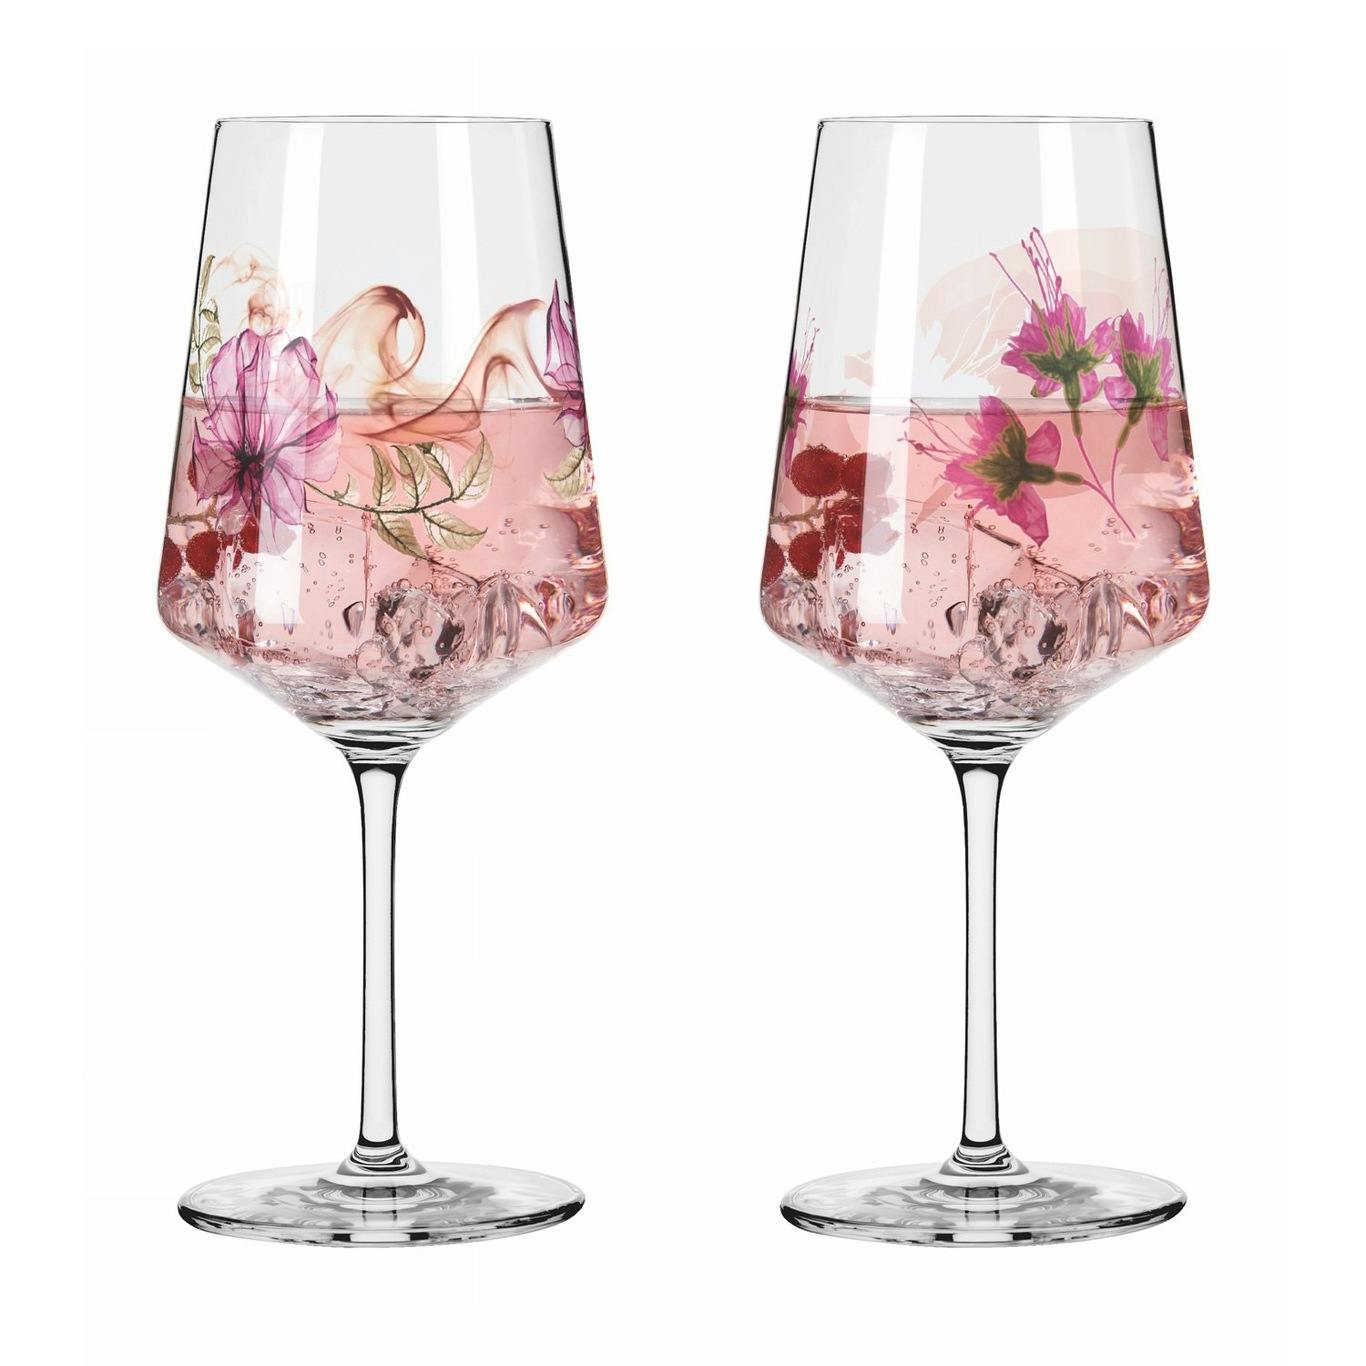 Sommersonett Wine Glasses 2-pack, #4